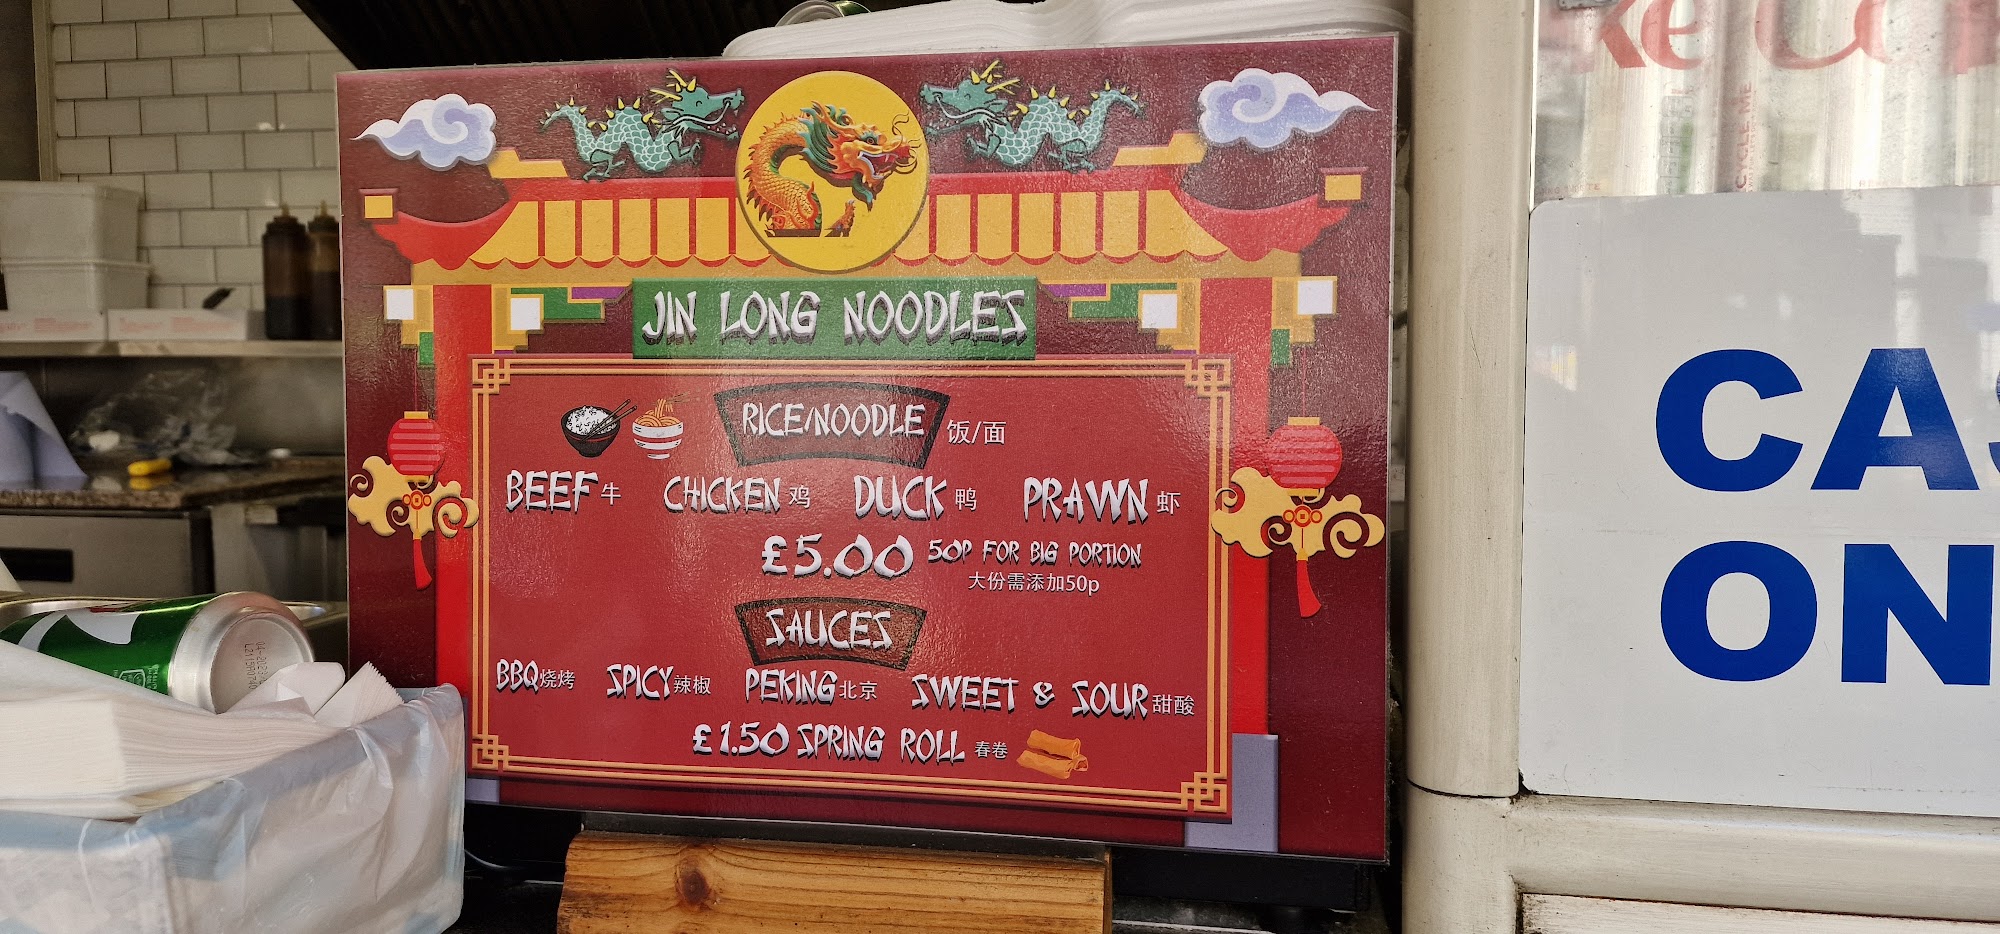 Jin Long Noodles